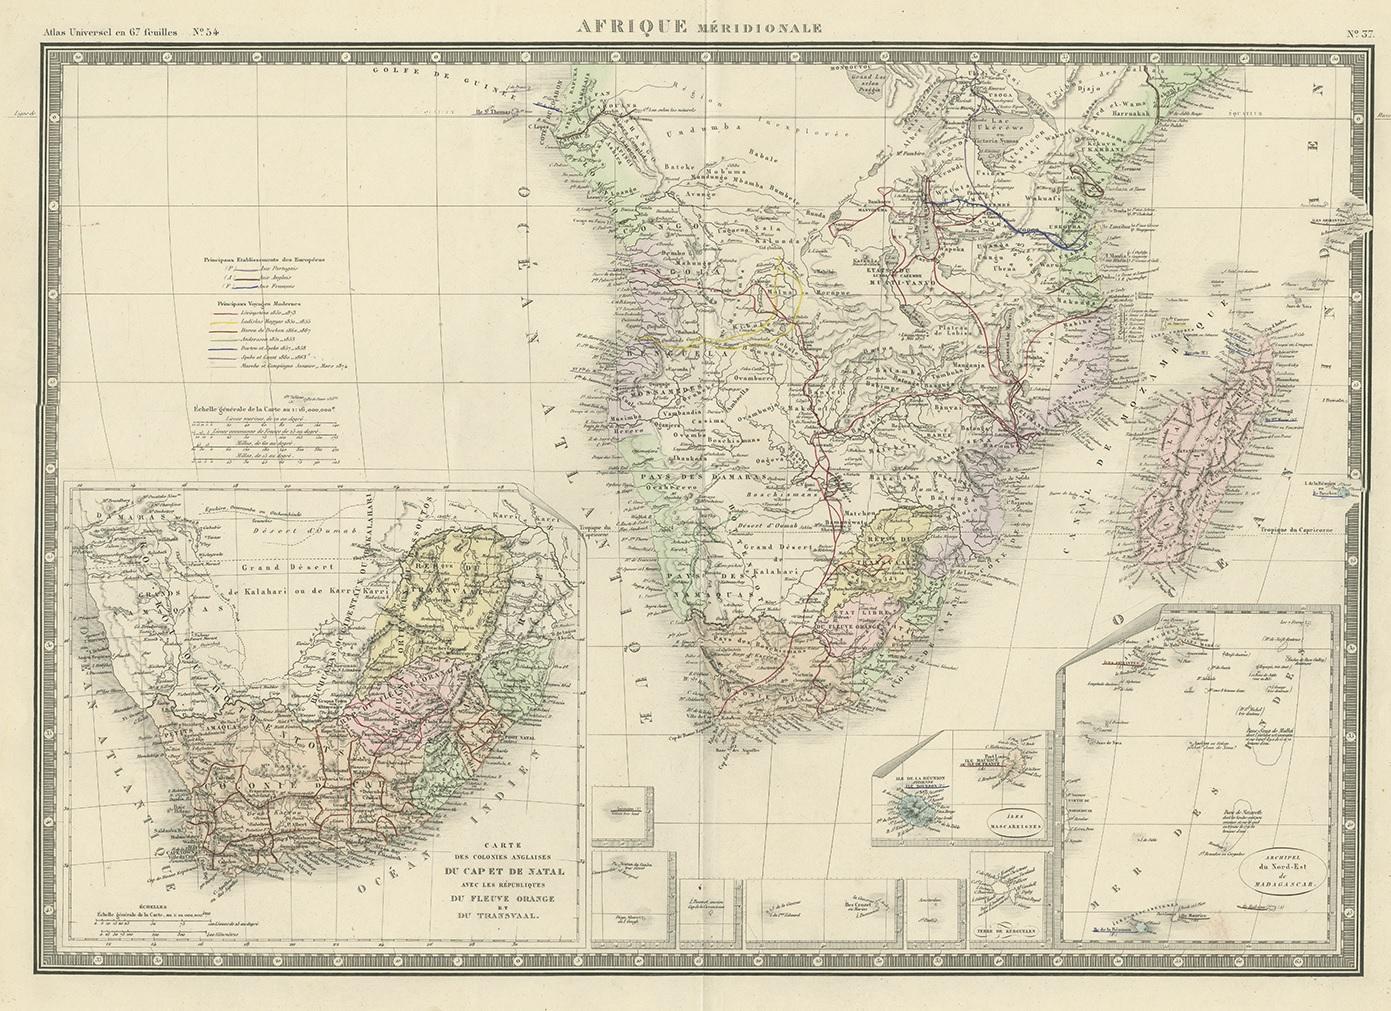 Antique map titled 'Afrique Méridionale'. Large map of Southern Africa. This map originates from 'Atlas de Géographie Moderne Physique et Politique' by A. Levasseur. Published 1875.